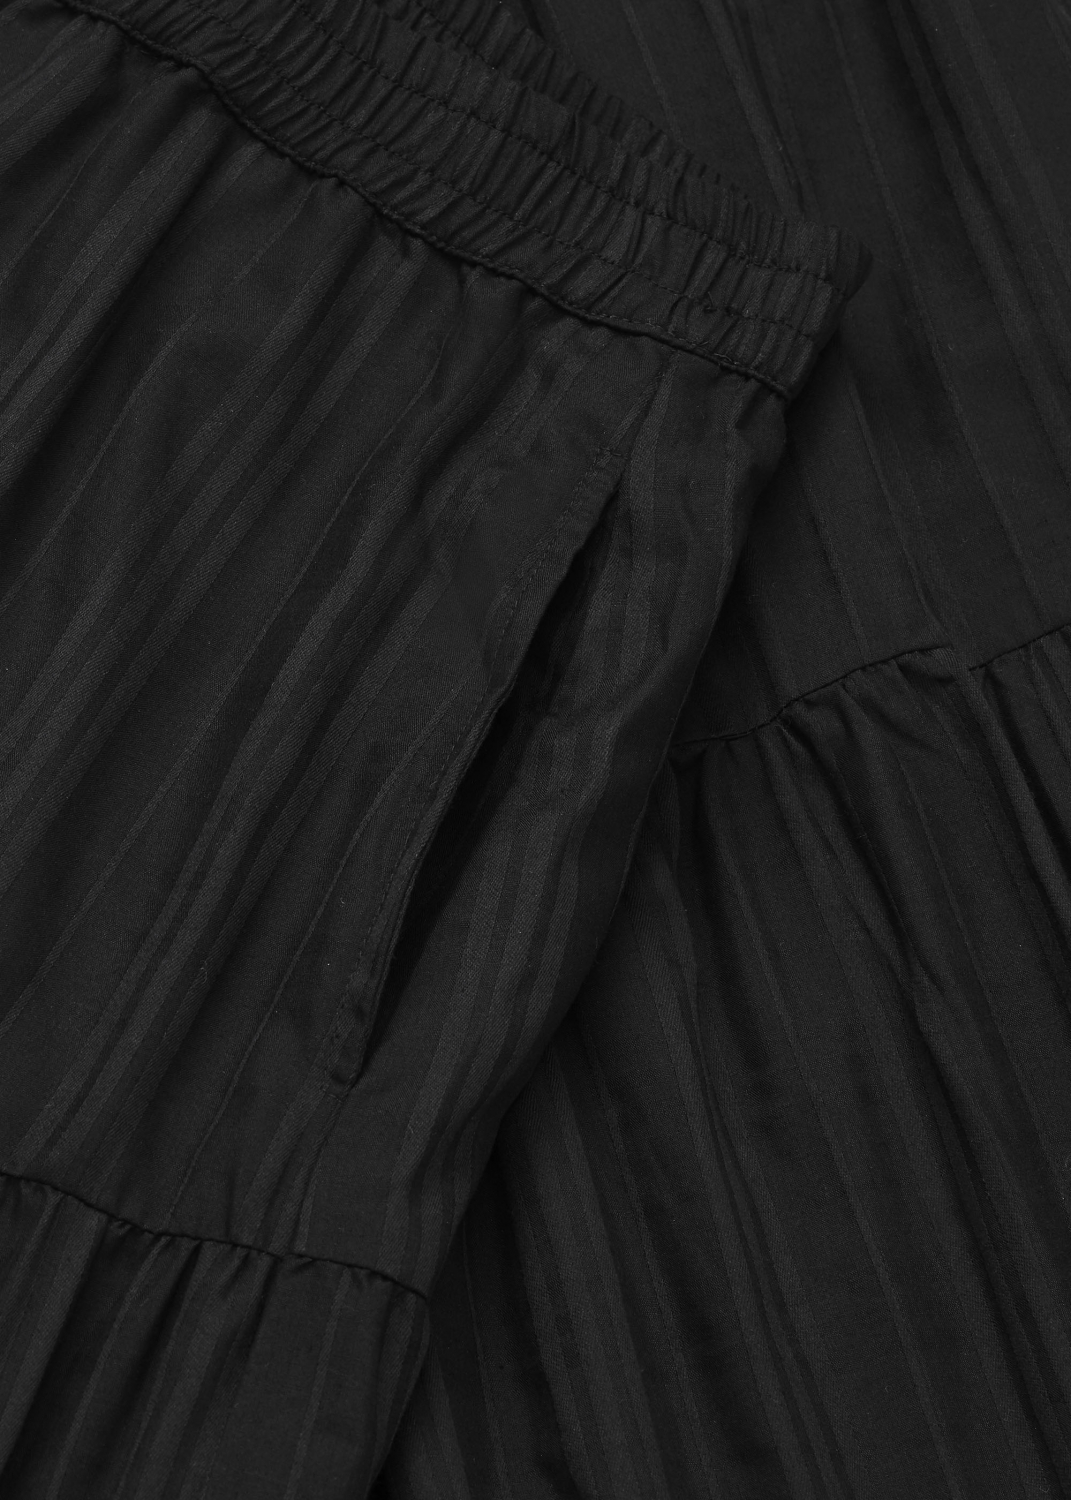 Dresses & Skirts - Roberta Dobby Skirt